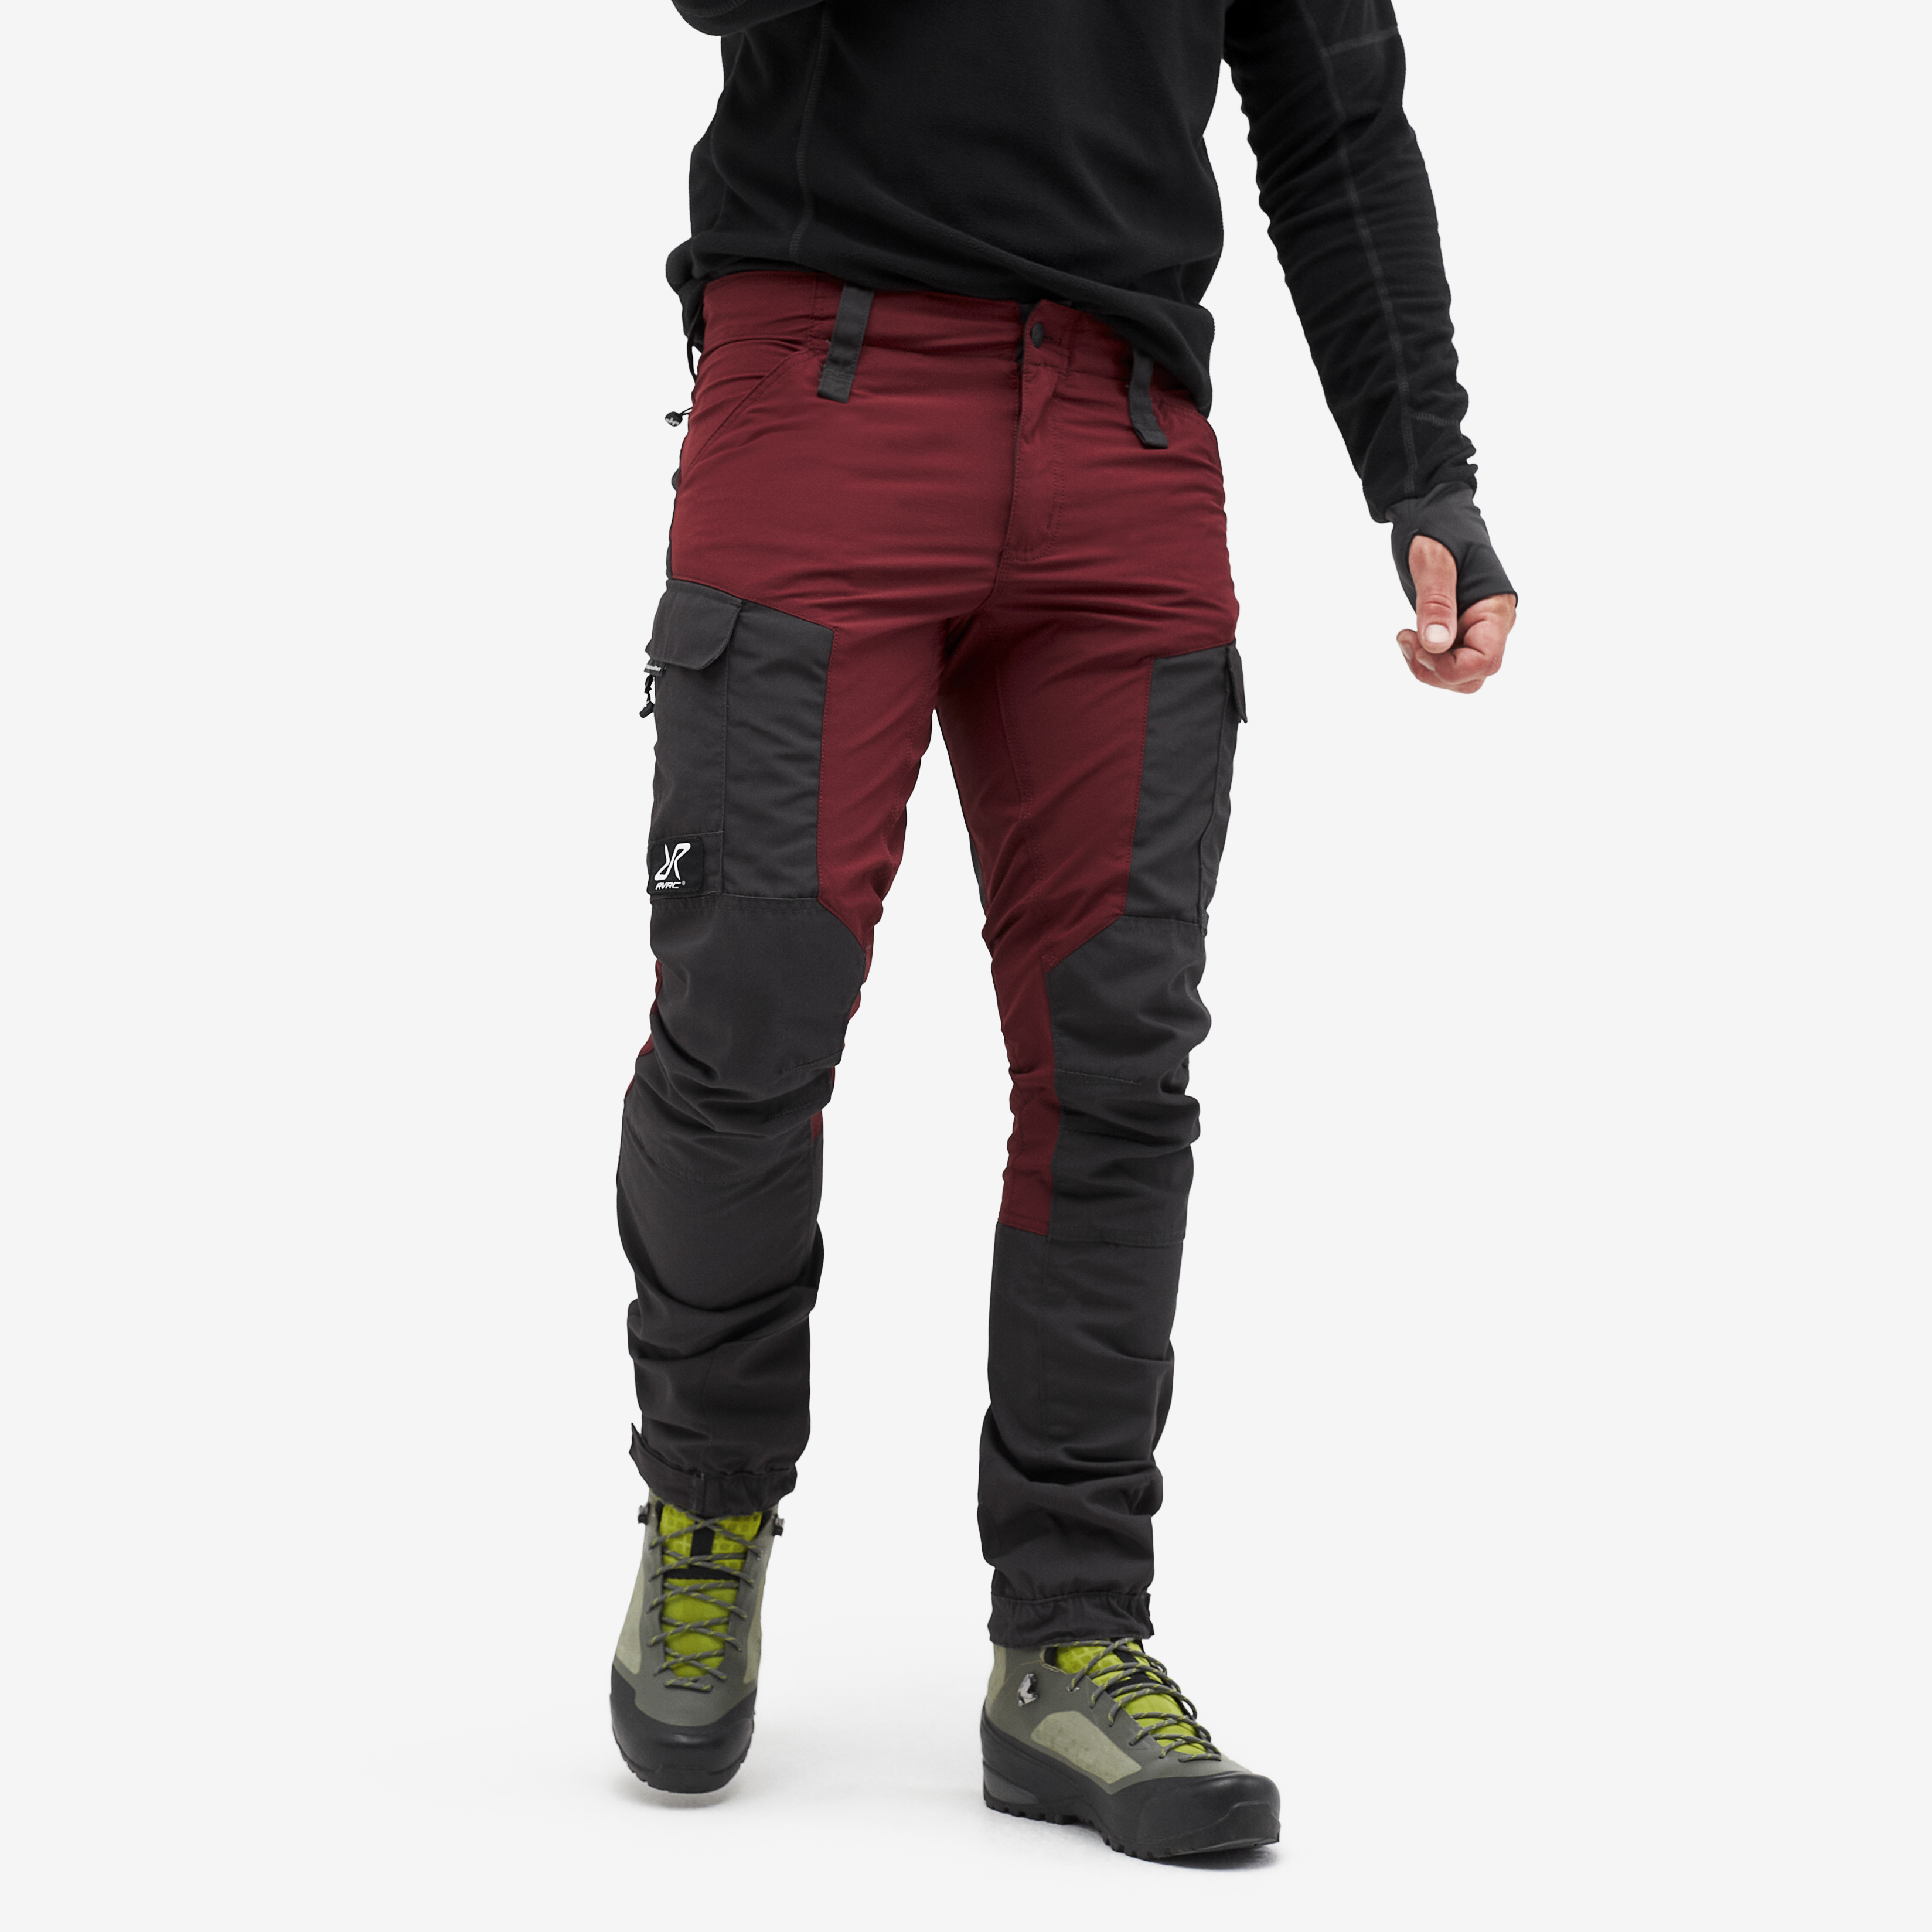 RVRC GP outdoor pants for men in dark red